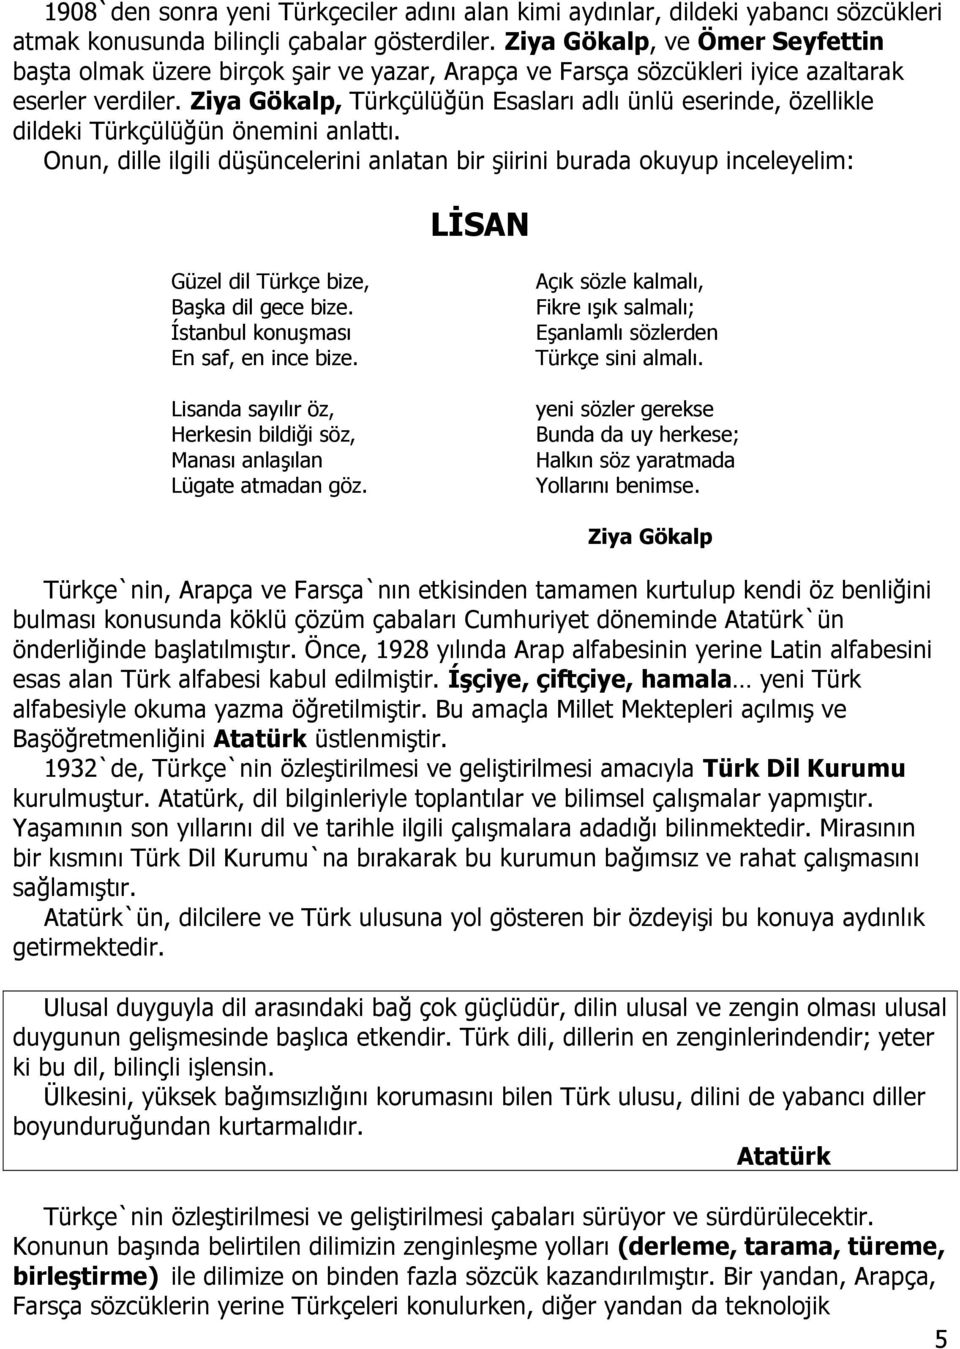 Ziya Gökalp, Türkçülüğün Esasları adlı ünlü eserinde, özellikle dildeki Türkçülüğün önemini anlattı.